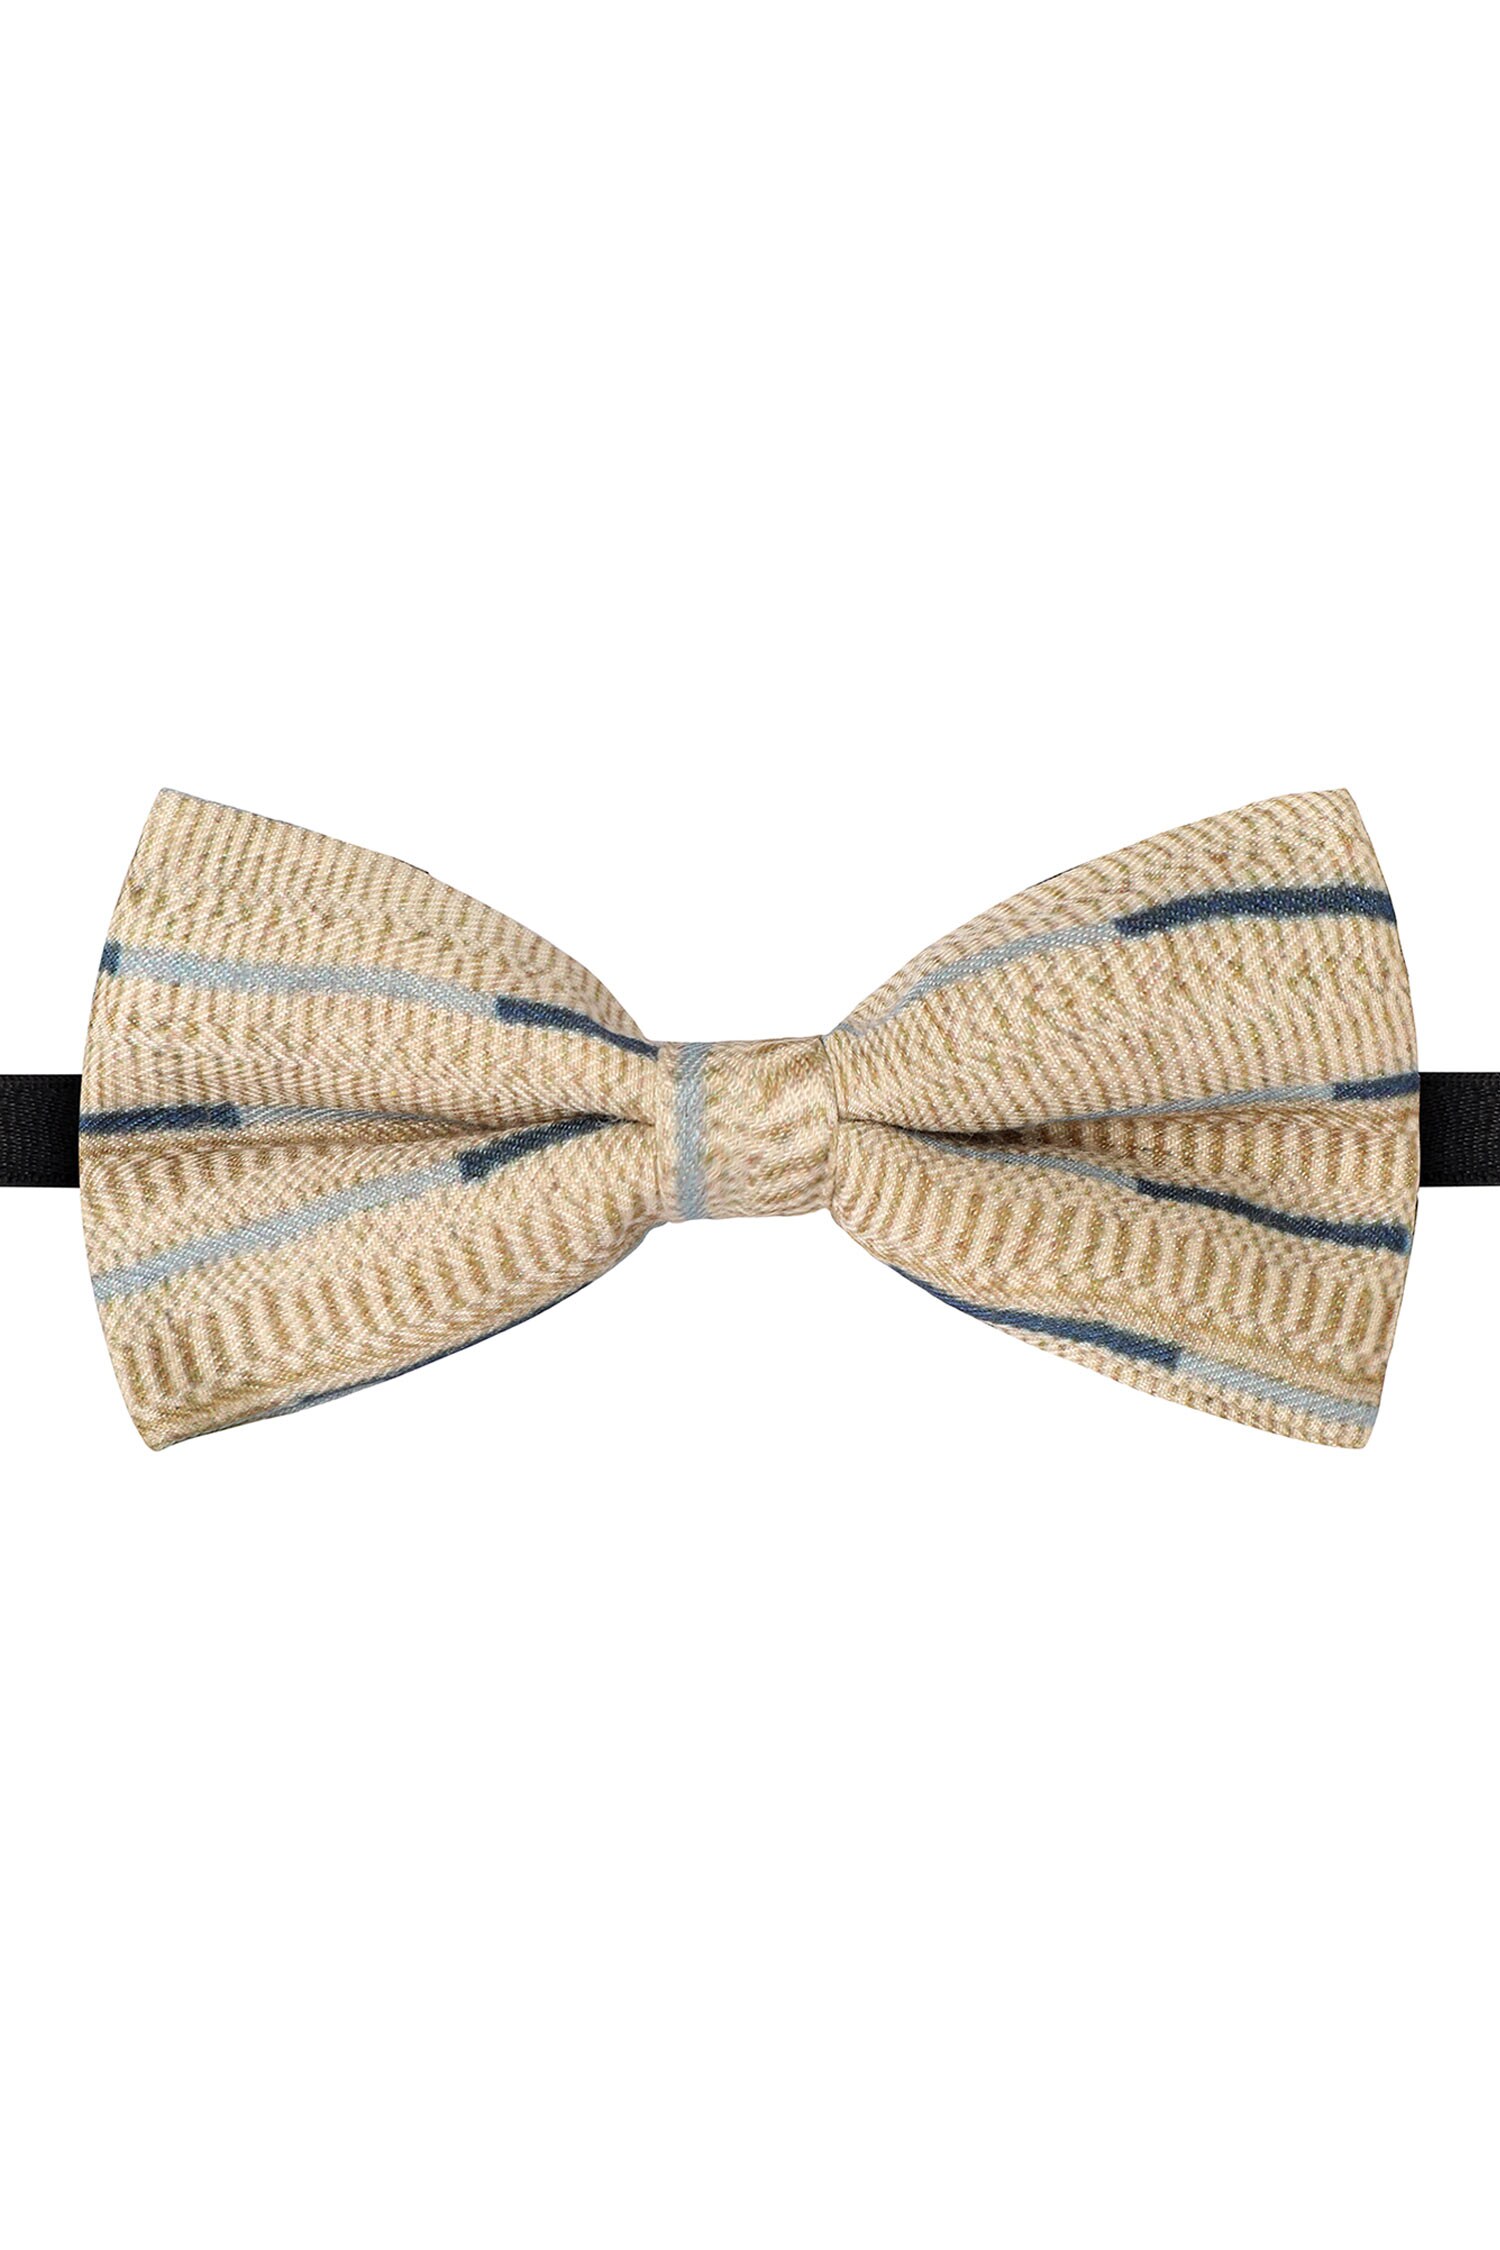 Closet Code Beige Cotton Satin Bow Tie